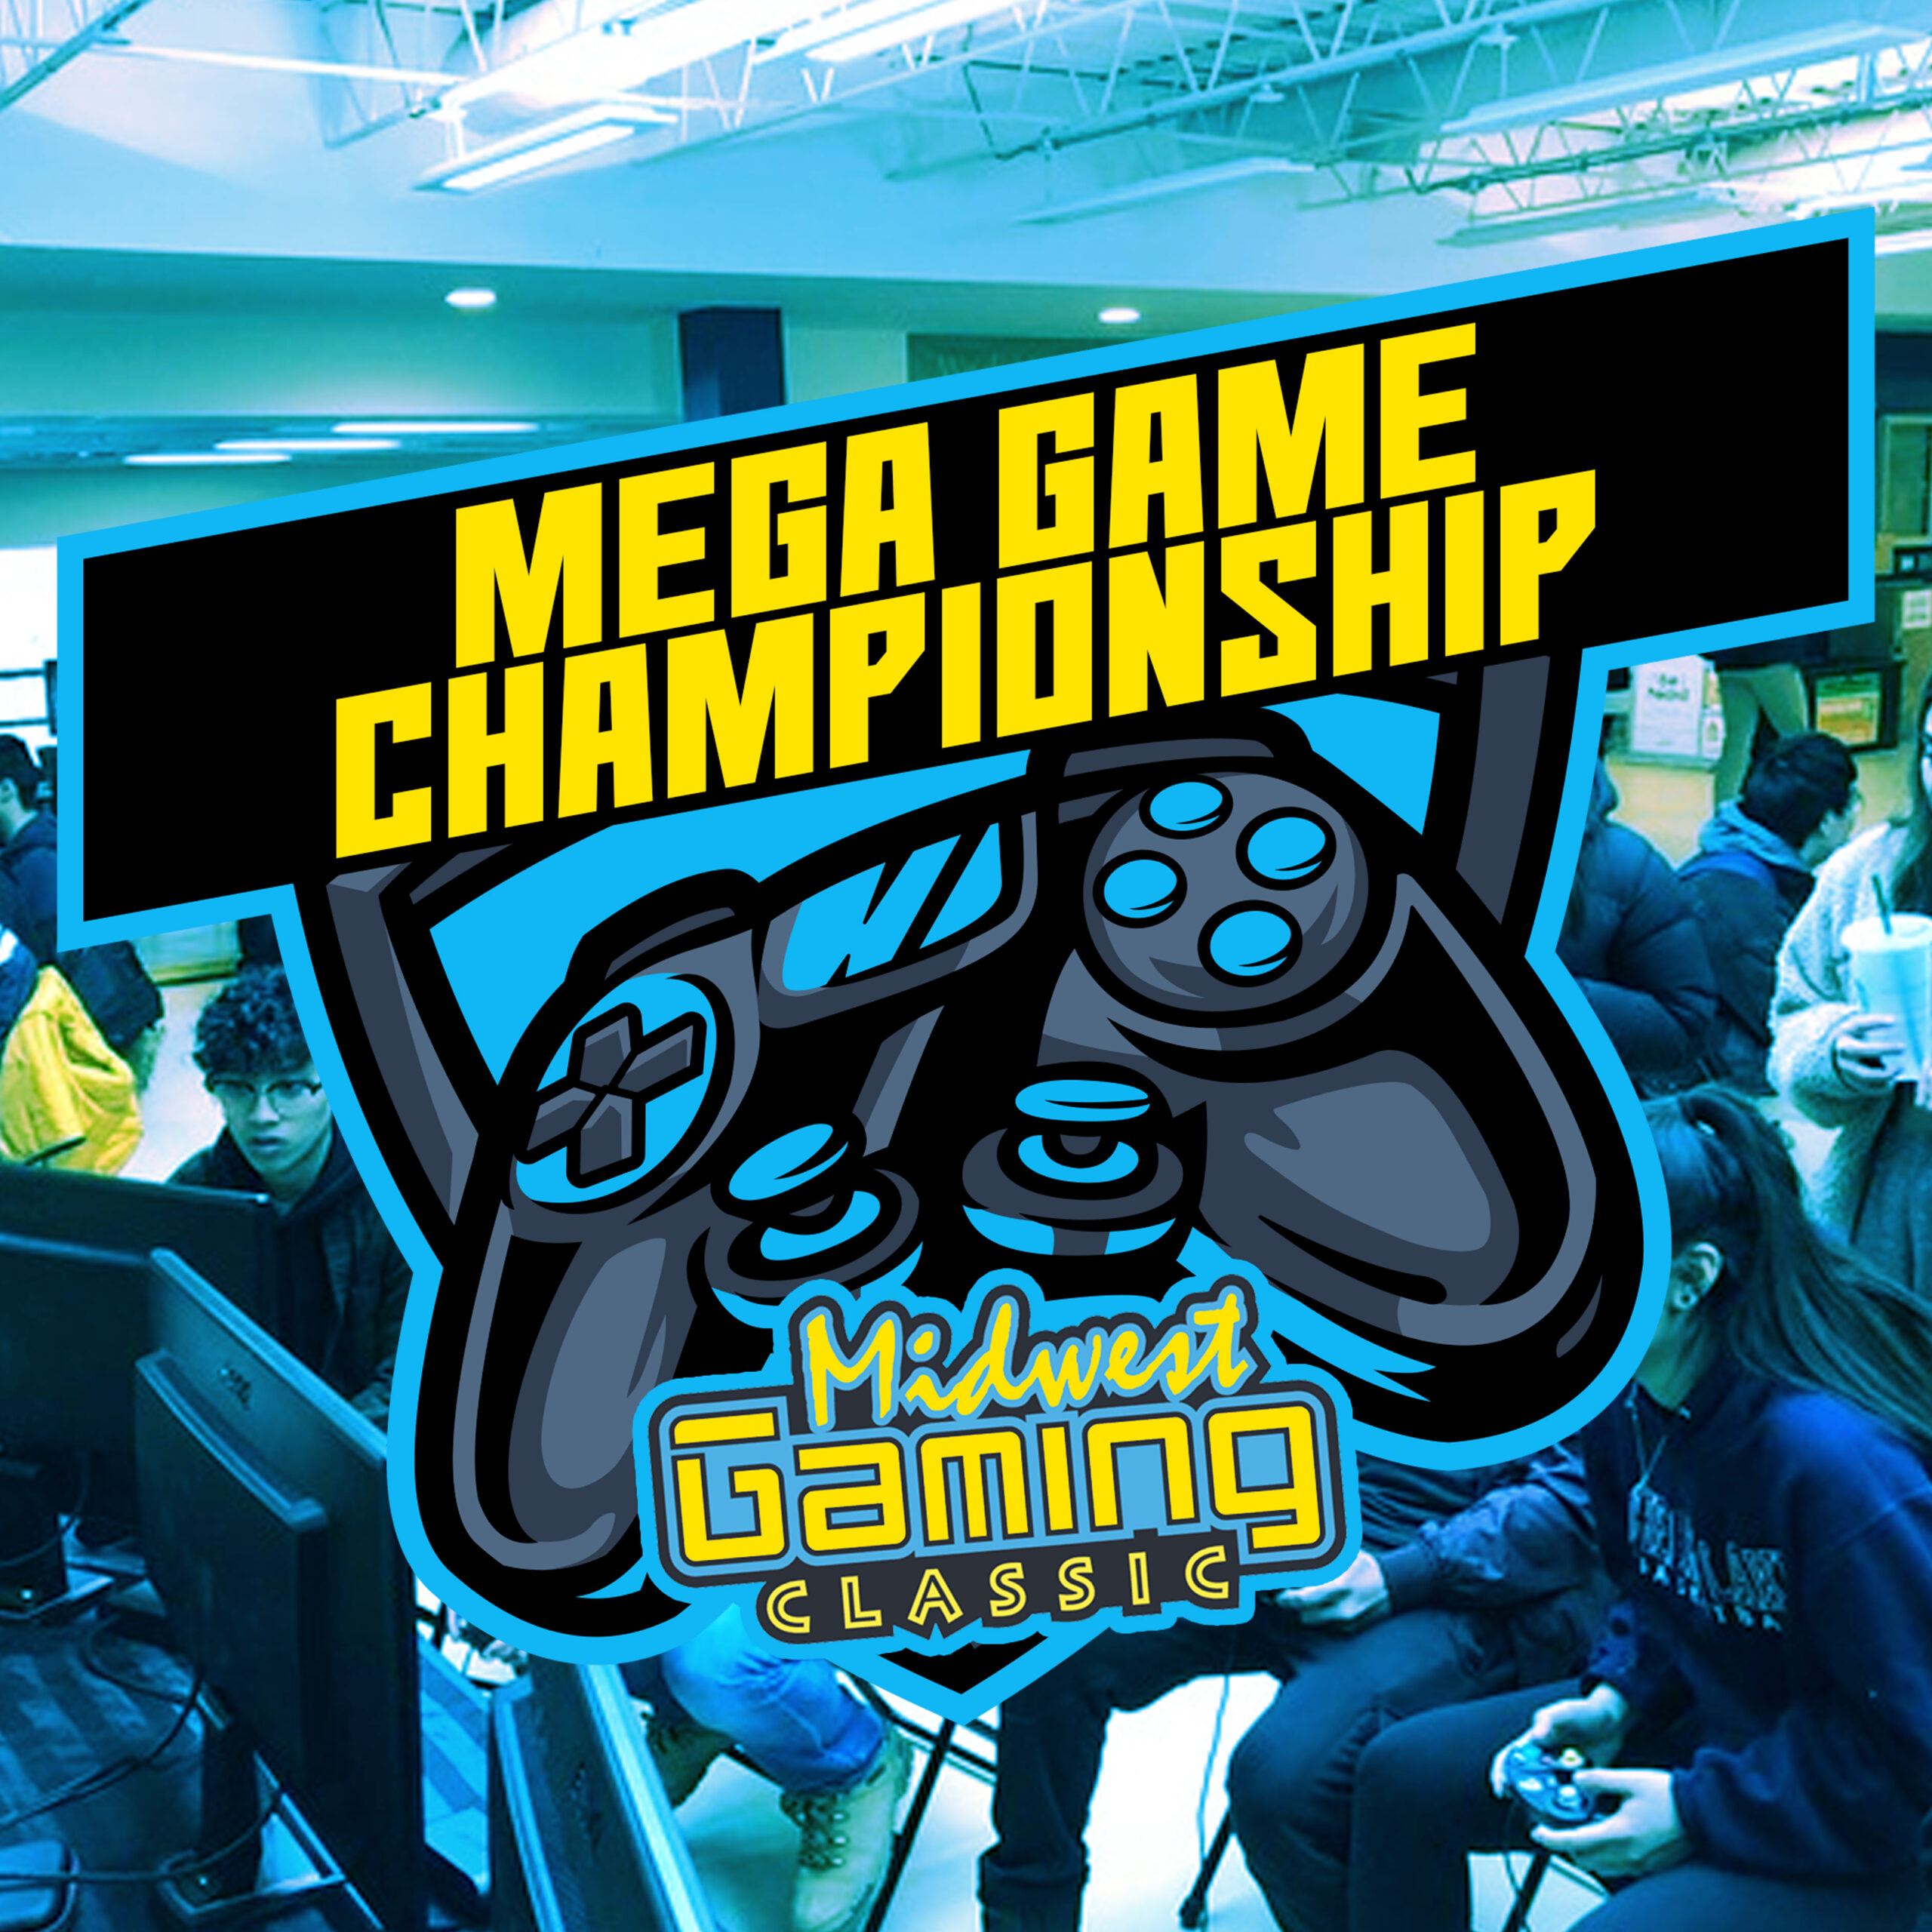 Mega Game Championship Finals